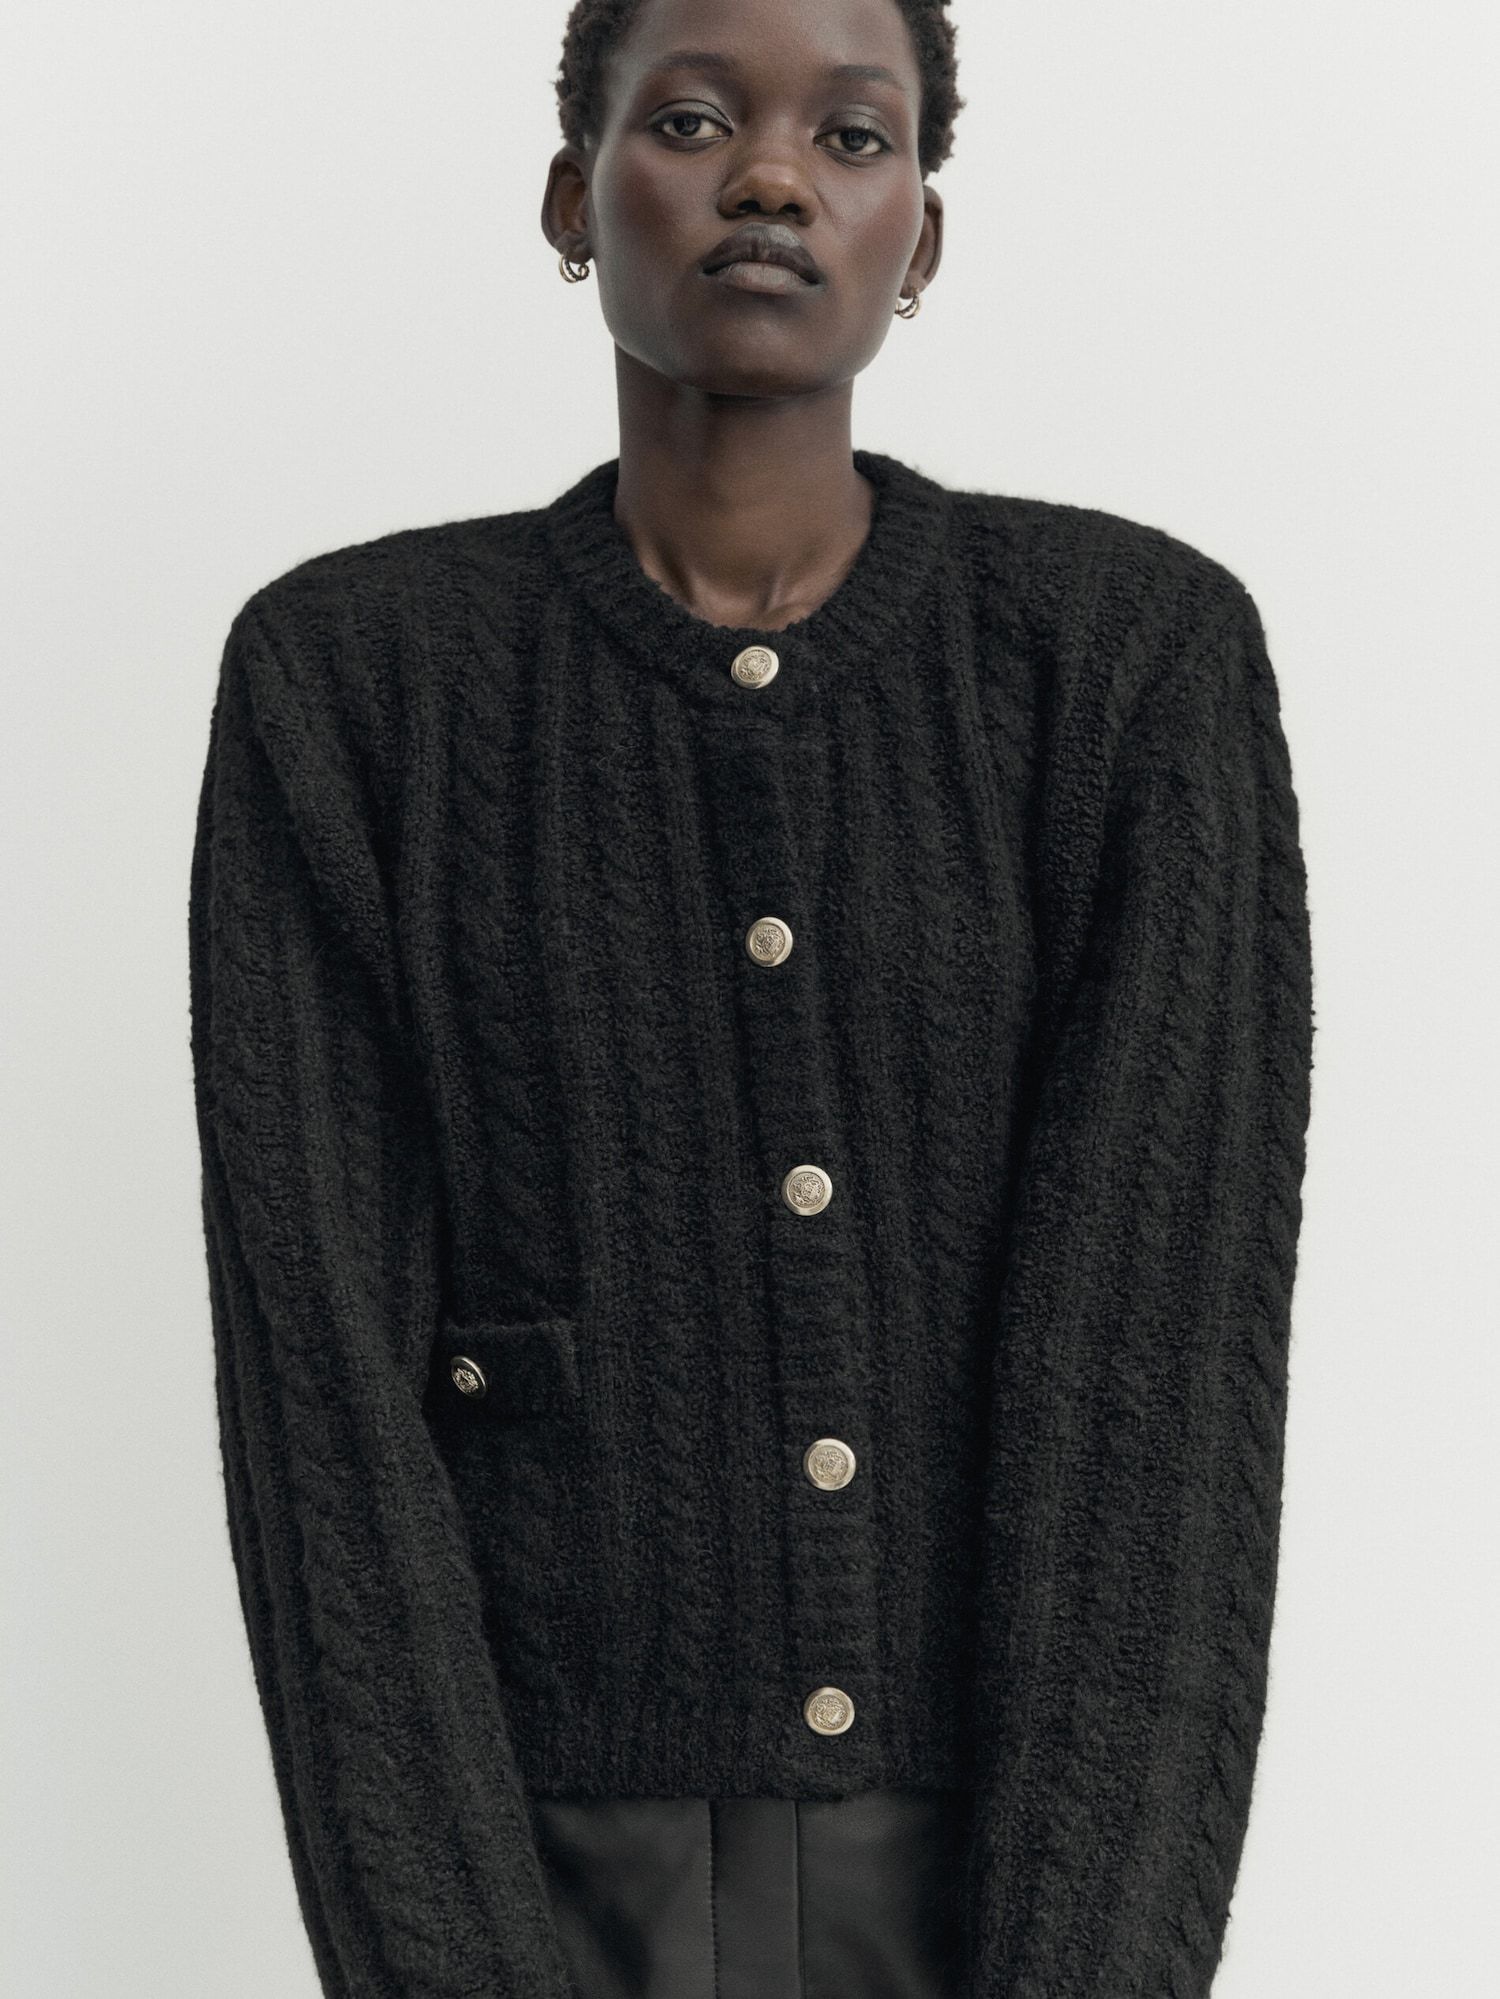 Bouclé woven knit mini cardigan with pockets | Massimo Dutti UK